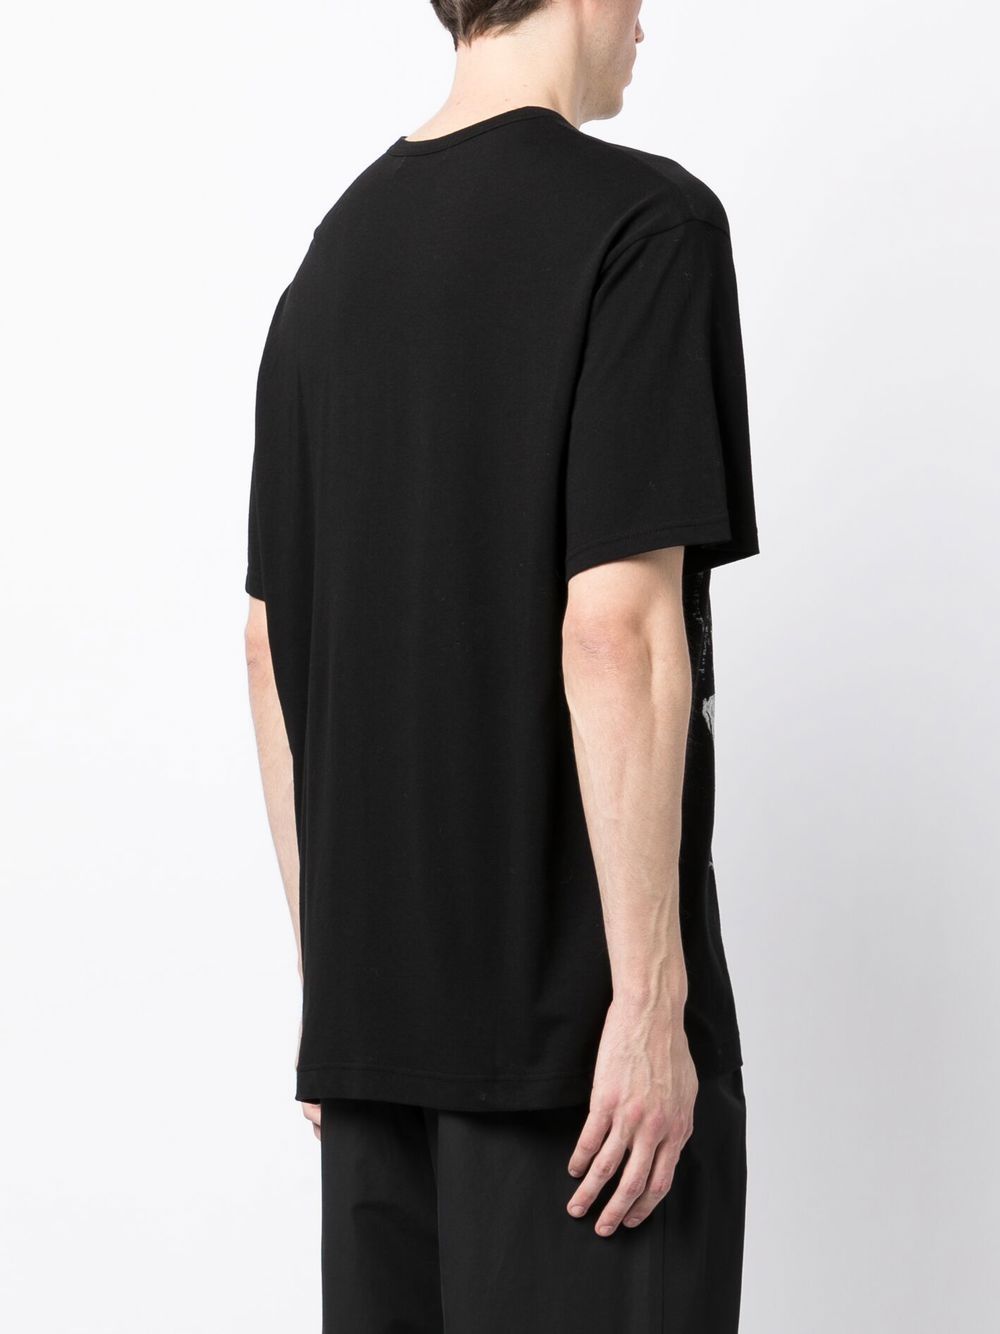 Yohji Yamamoto Pigment Cotton T-shirt - Farfetch